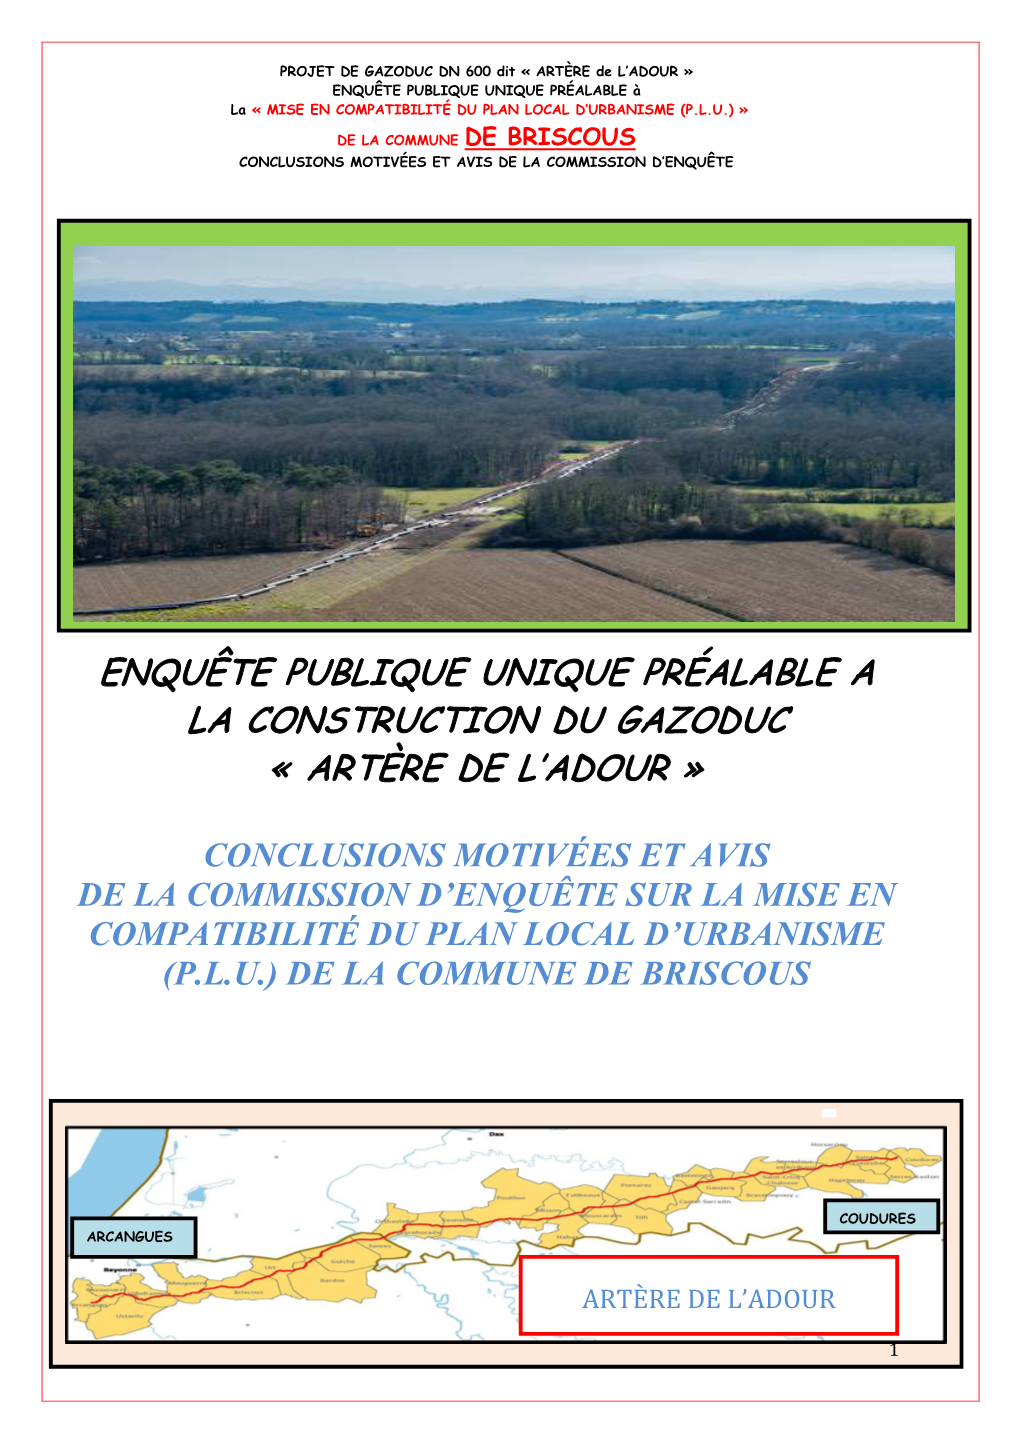 (Plu) De La Commune De Briscous